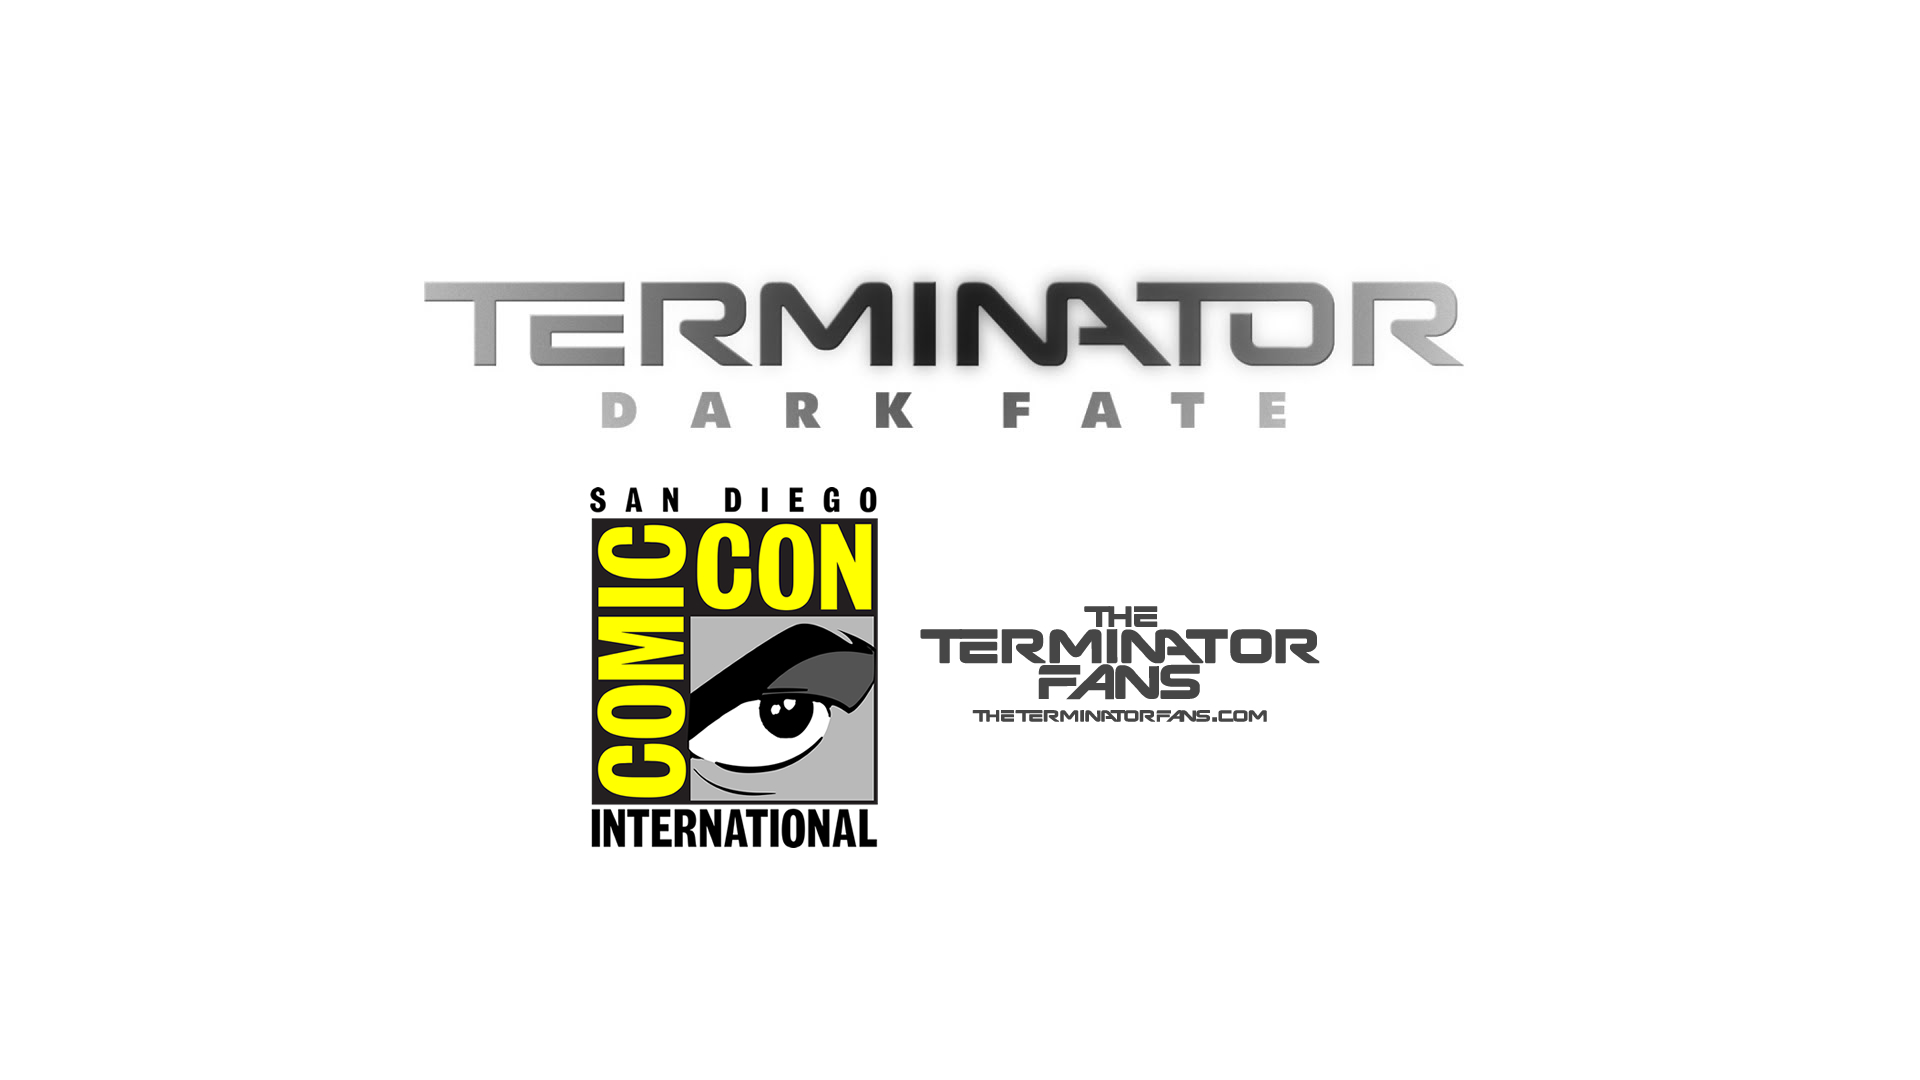 Terminator: Dark Fate - Wikipedia - wide 7